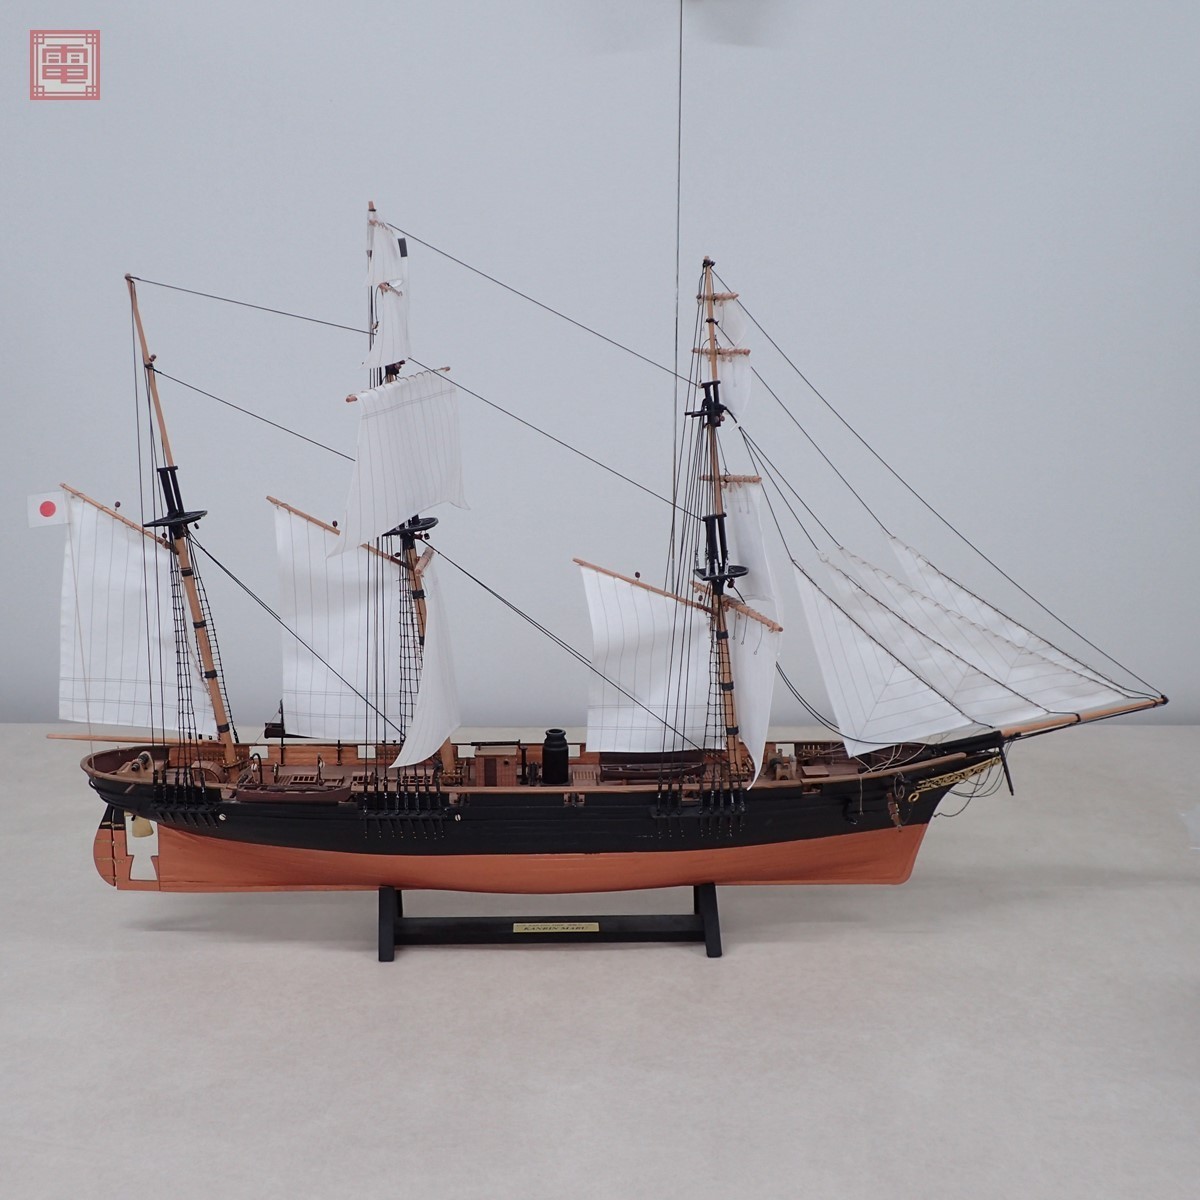 ウッディジョー 75 咸臨丸 帆無し 木製帆船模型 組立キット 通販